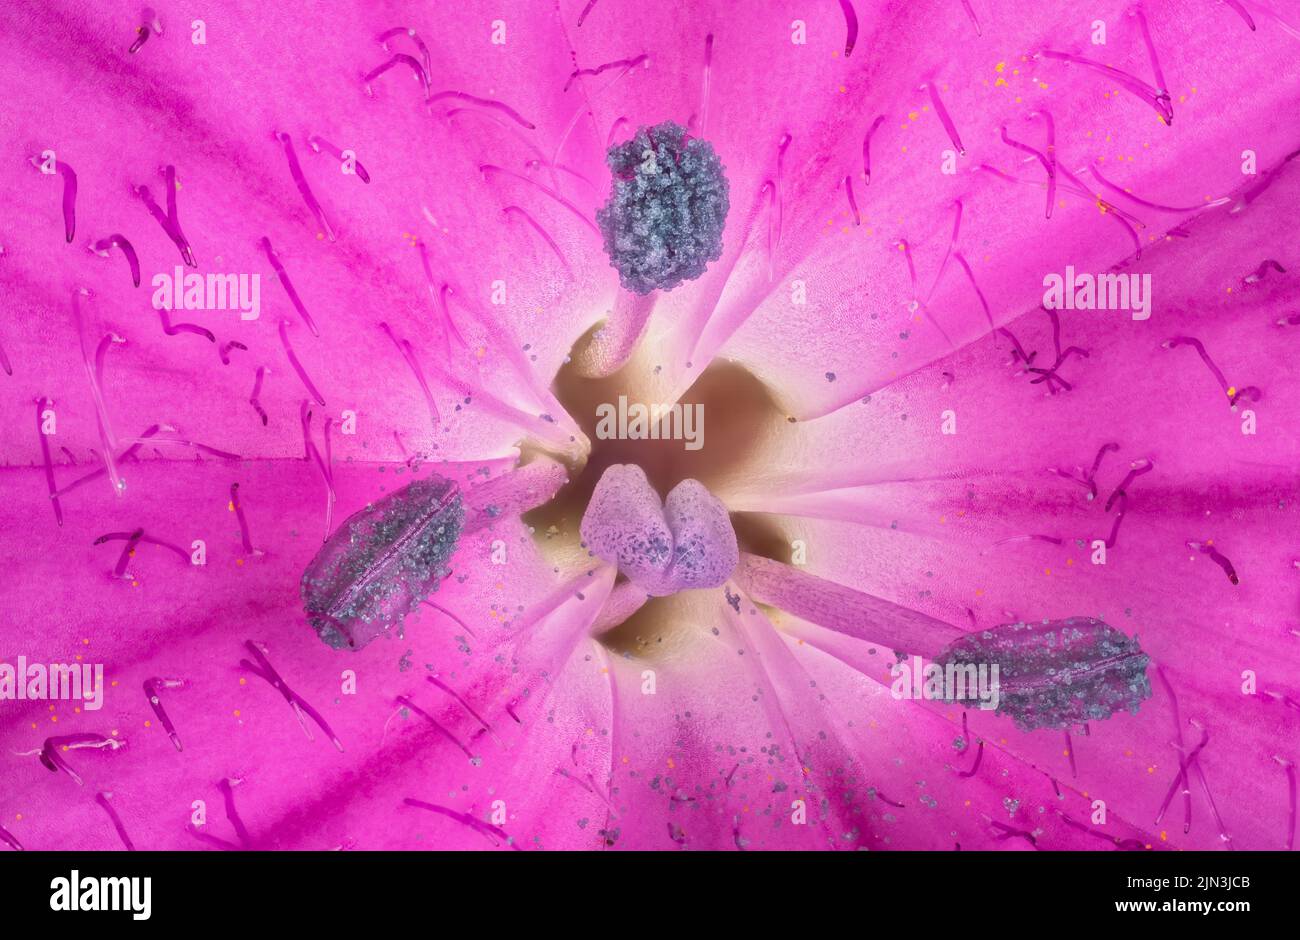 Fleurs de carnation sauvages roses - espèces de Dianthus - sous microscope, pistil avec stigmate et particules de pollen couvertes d'étamines visibles.Largeur de l'image 9 mm Banque D'Images